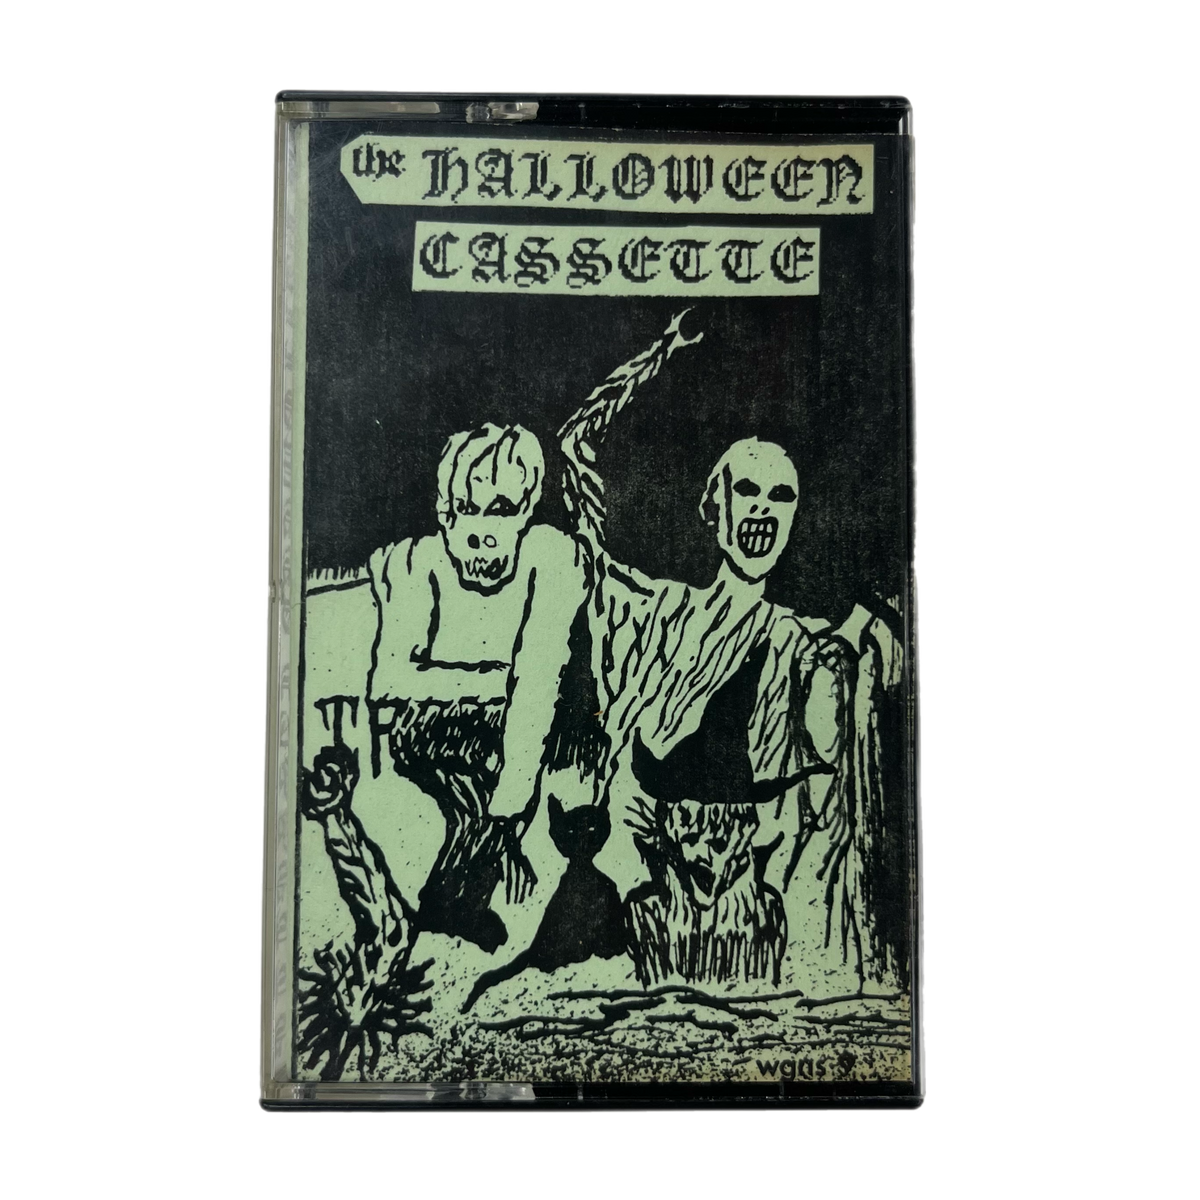 Vintage WGNS Recordings &quot;The Halloween Cassette&quot; Compilation Cassette Tape #15